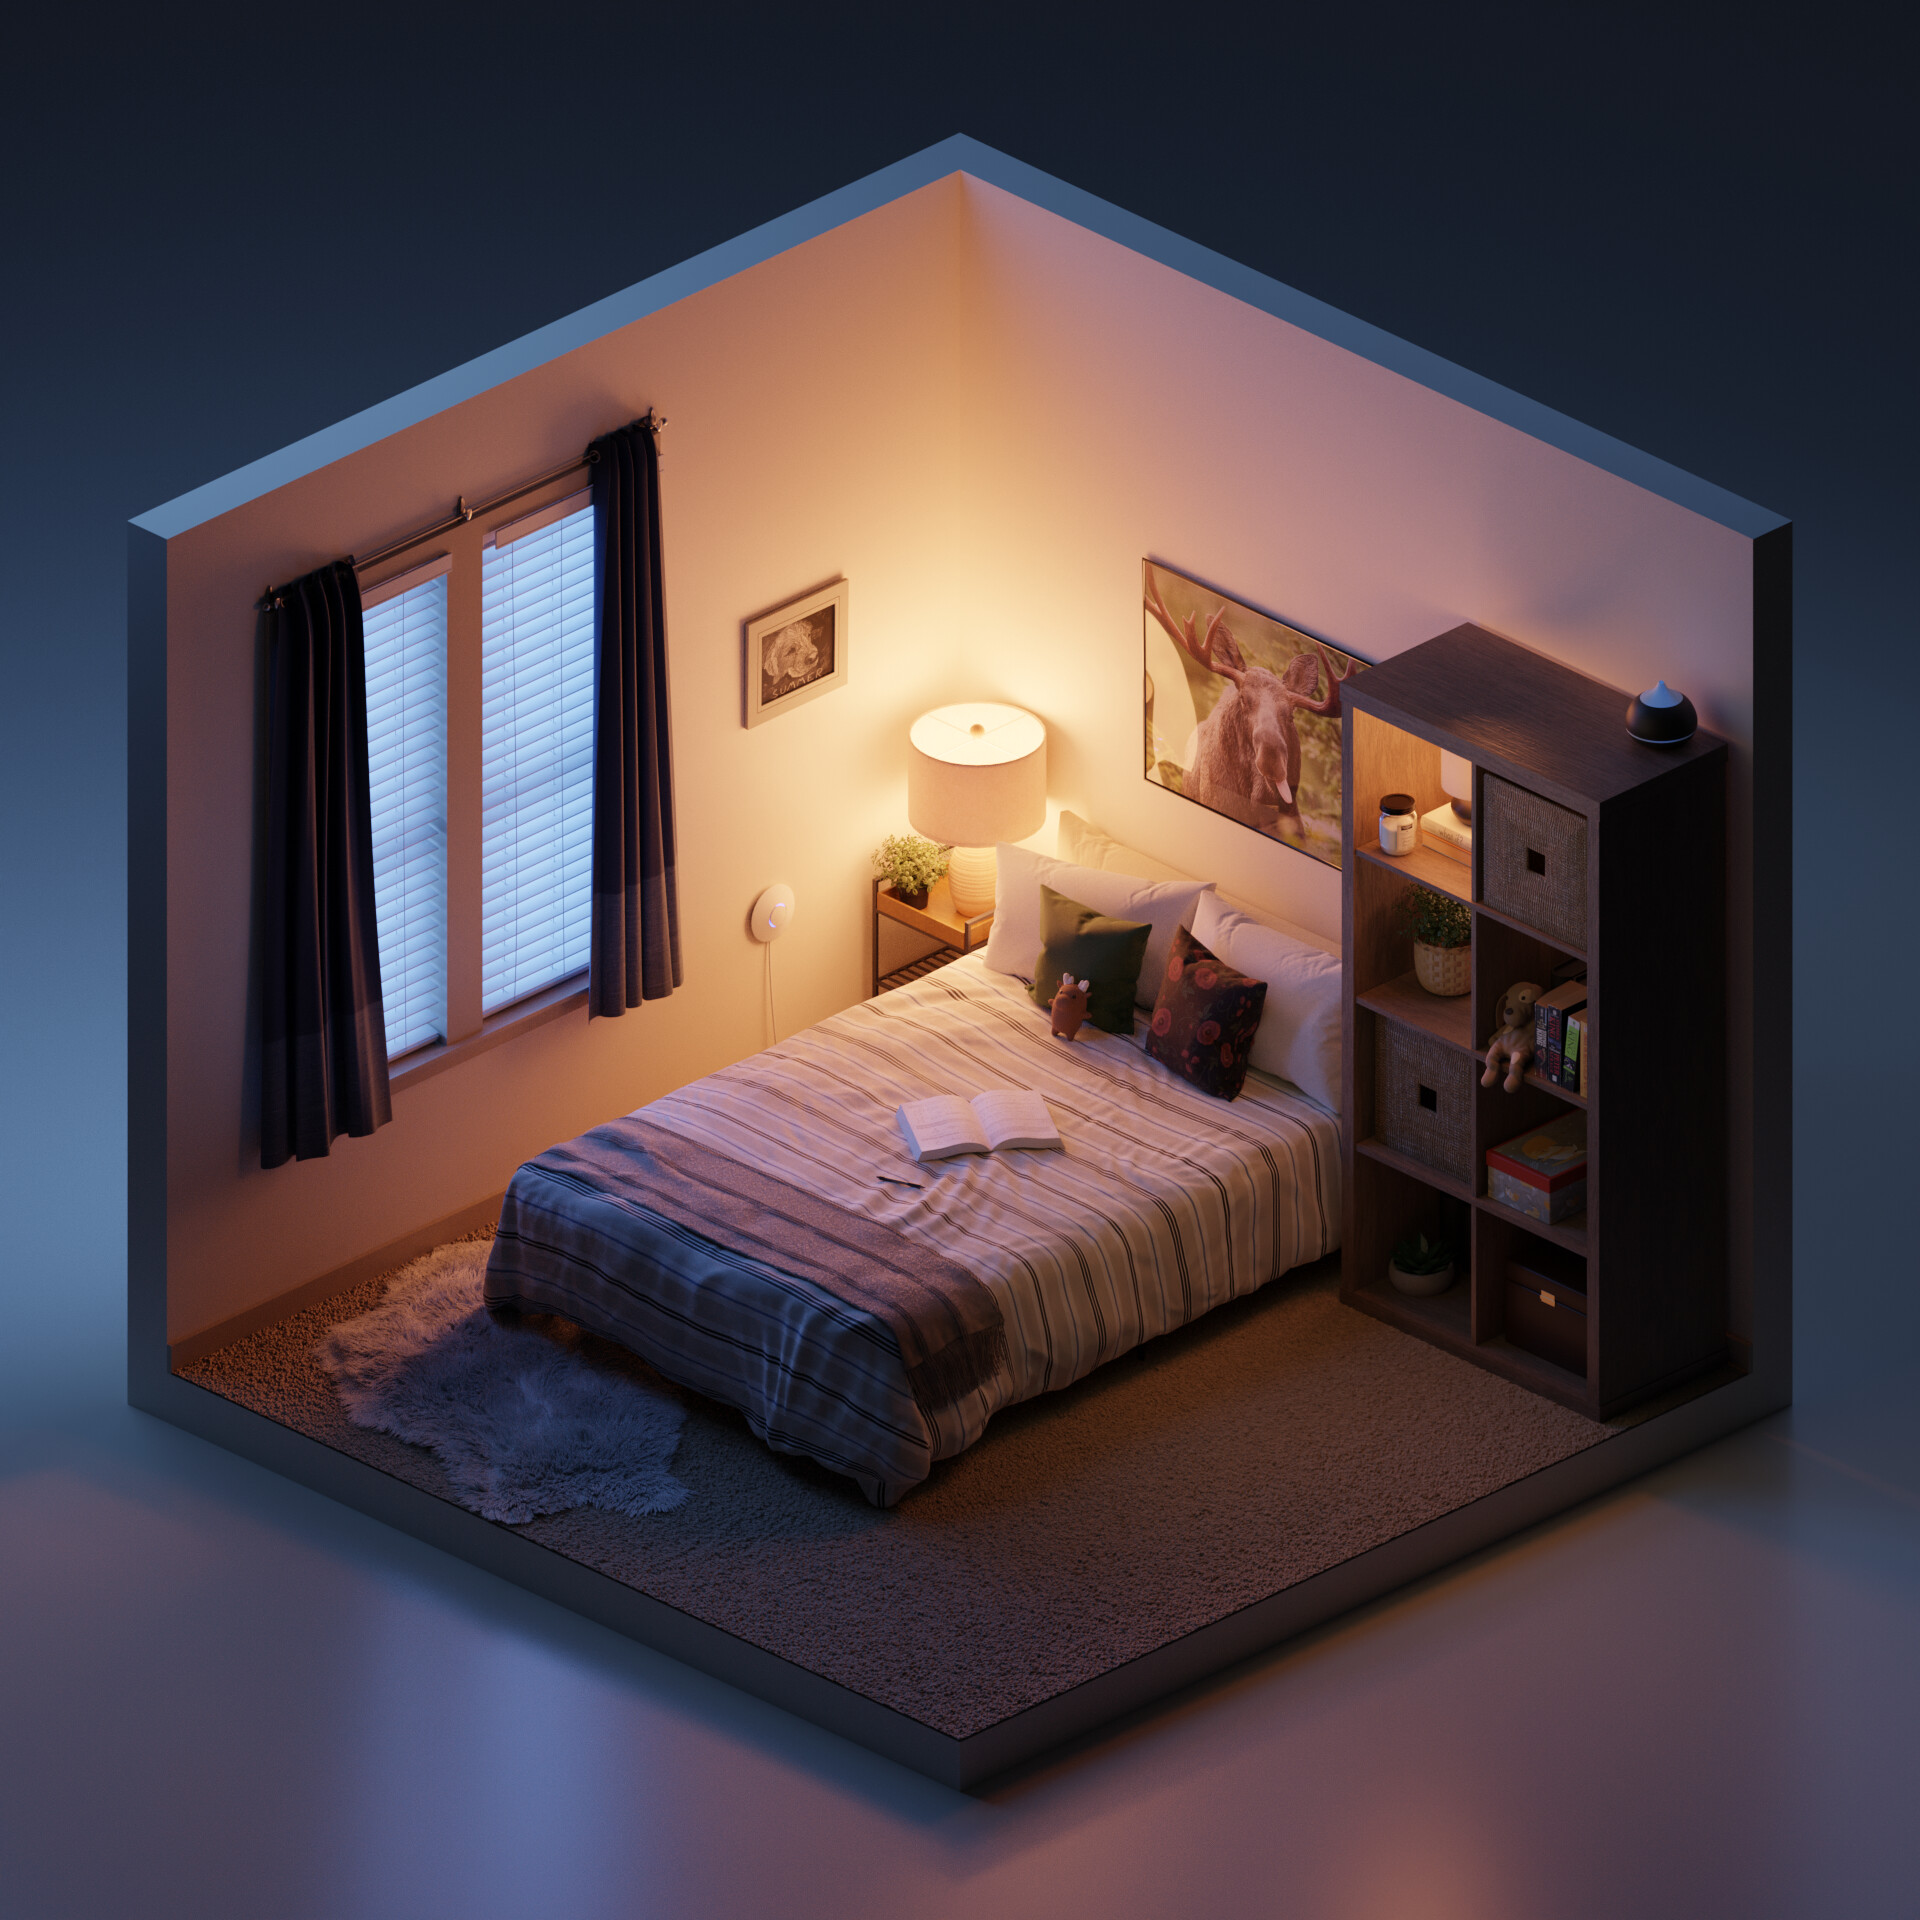 ArtStation - Cozy Bedroom